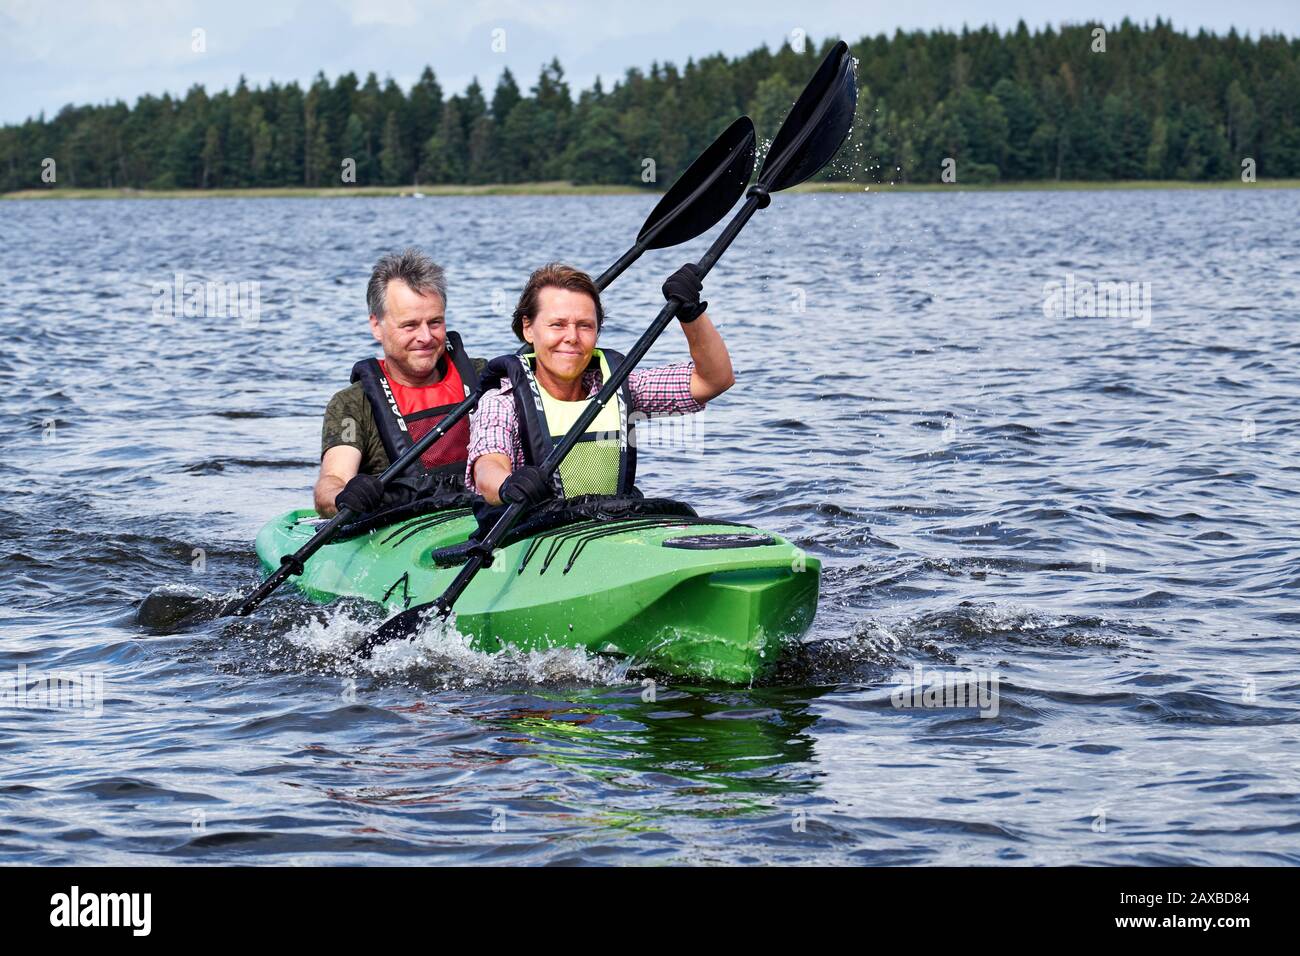 Männer- und Frauenpaar, die gemeinsam auf dem Åsnen-See in Schweden Kajak machen Stockfoto